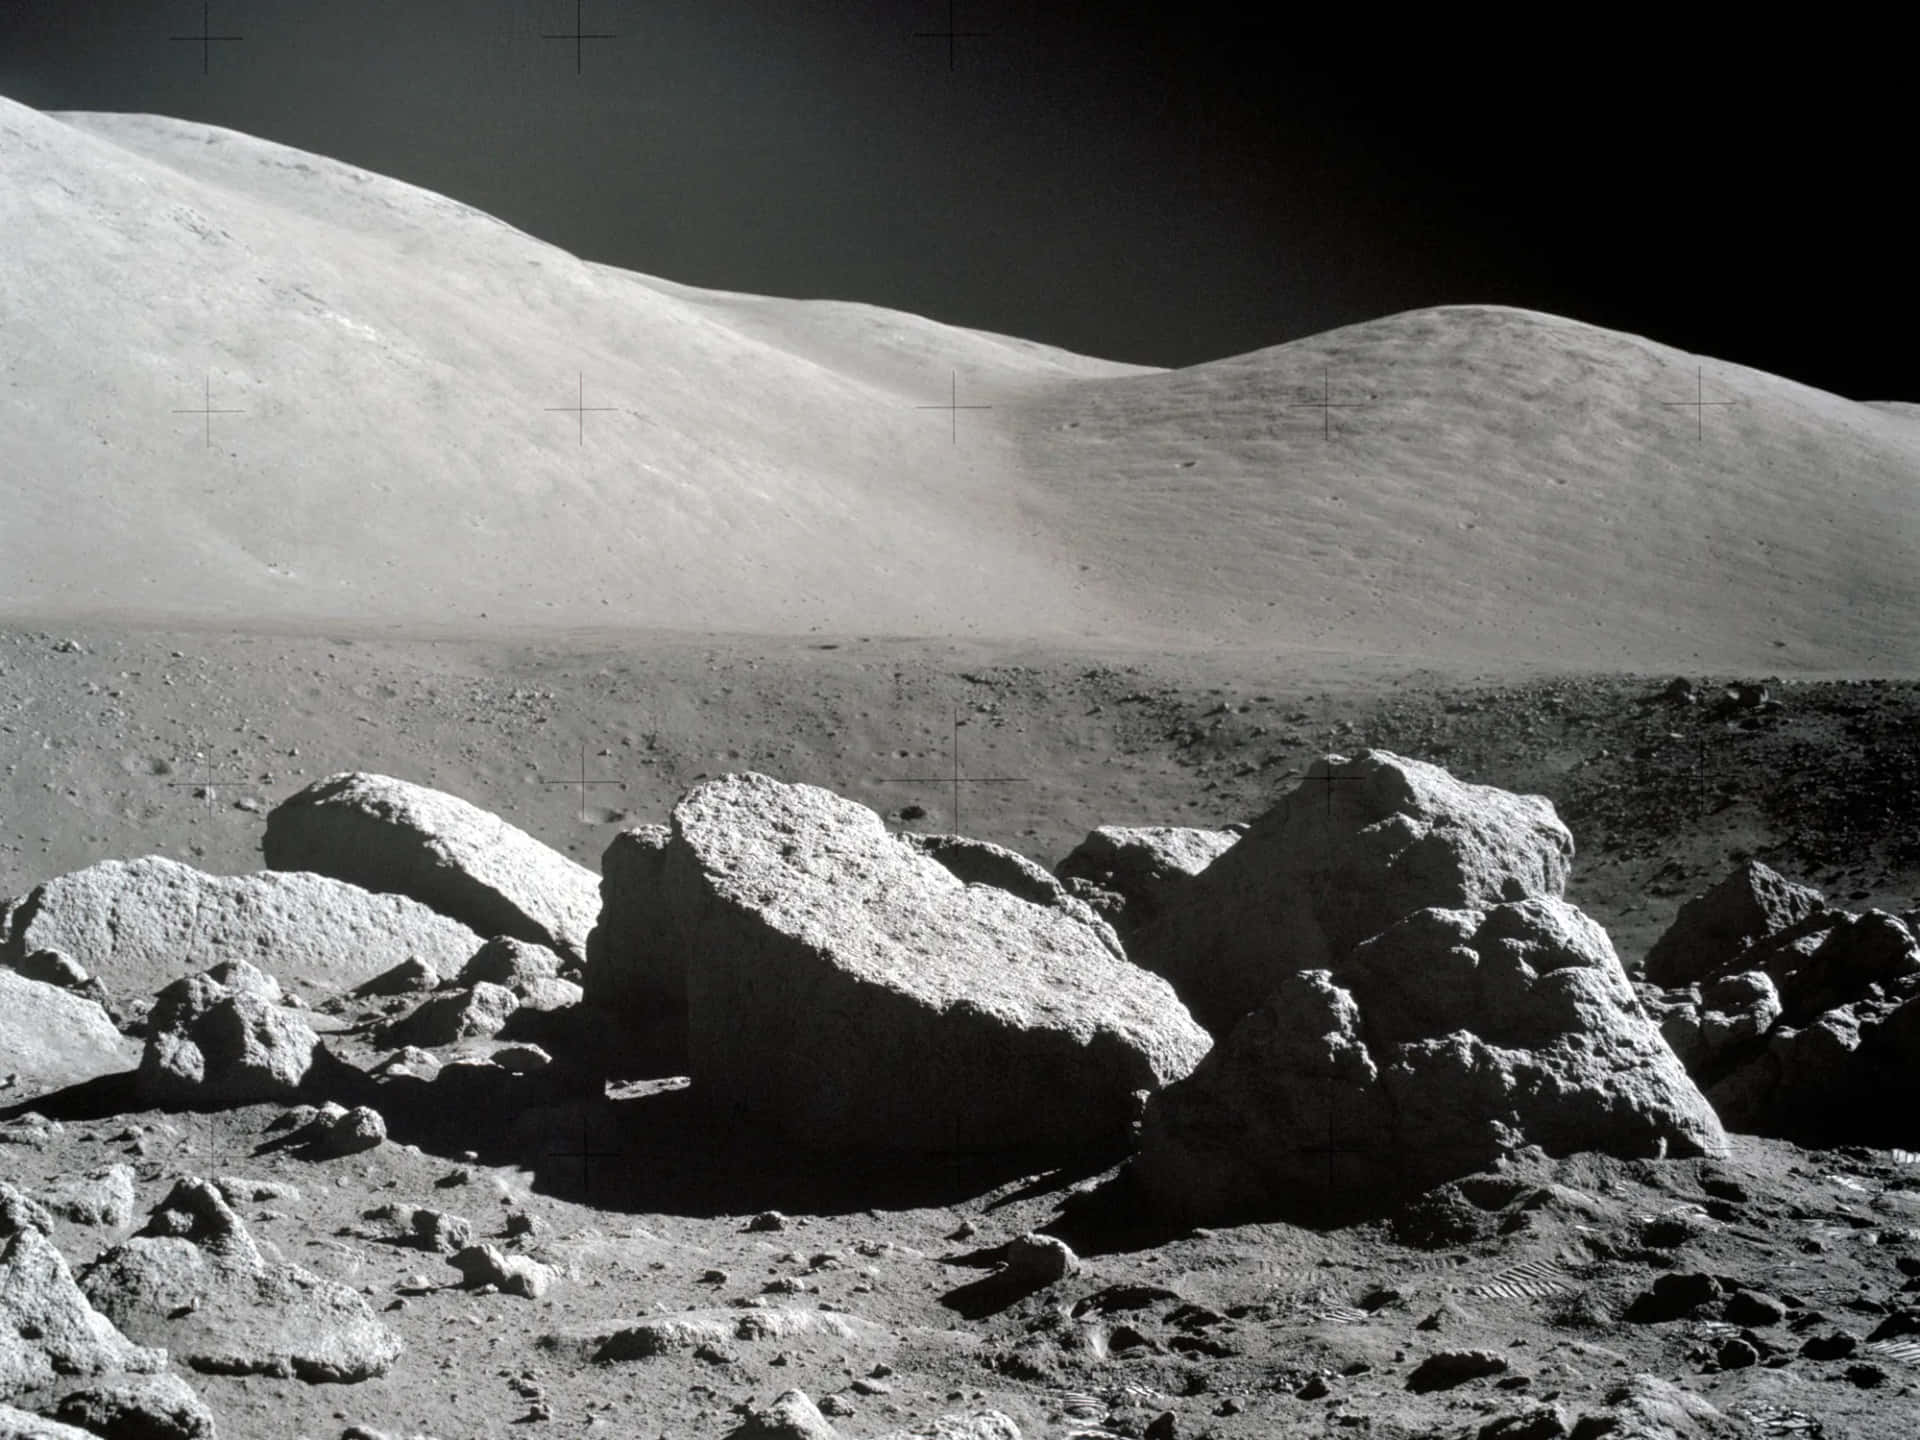 Imagende La Superficie De La Luna De Apollo 17